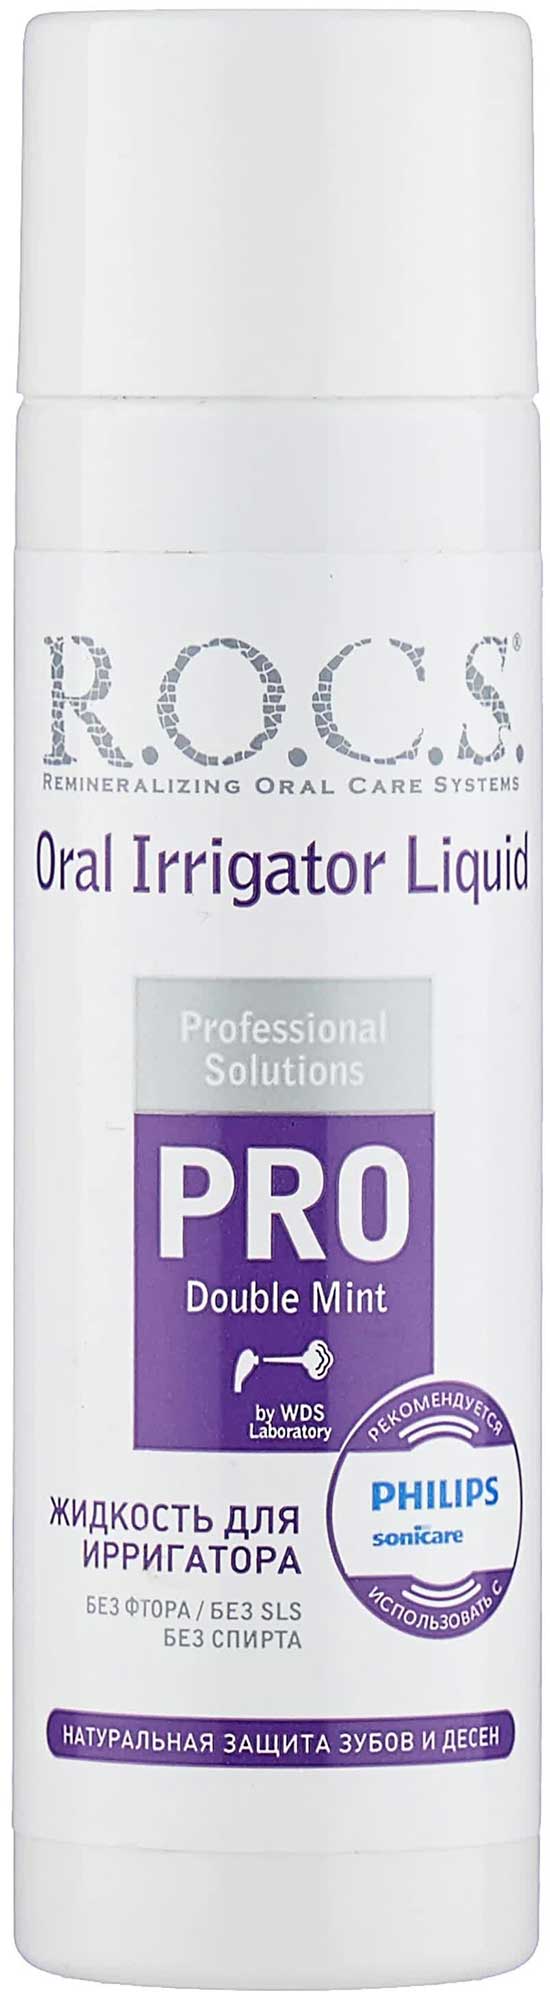 Жидкость для Ирригатора R.O.C.S. Pro 75 мл